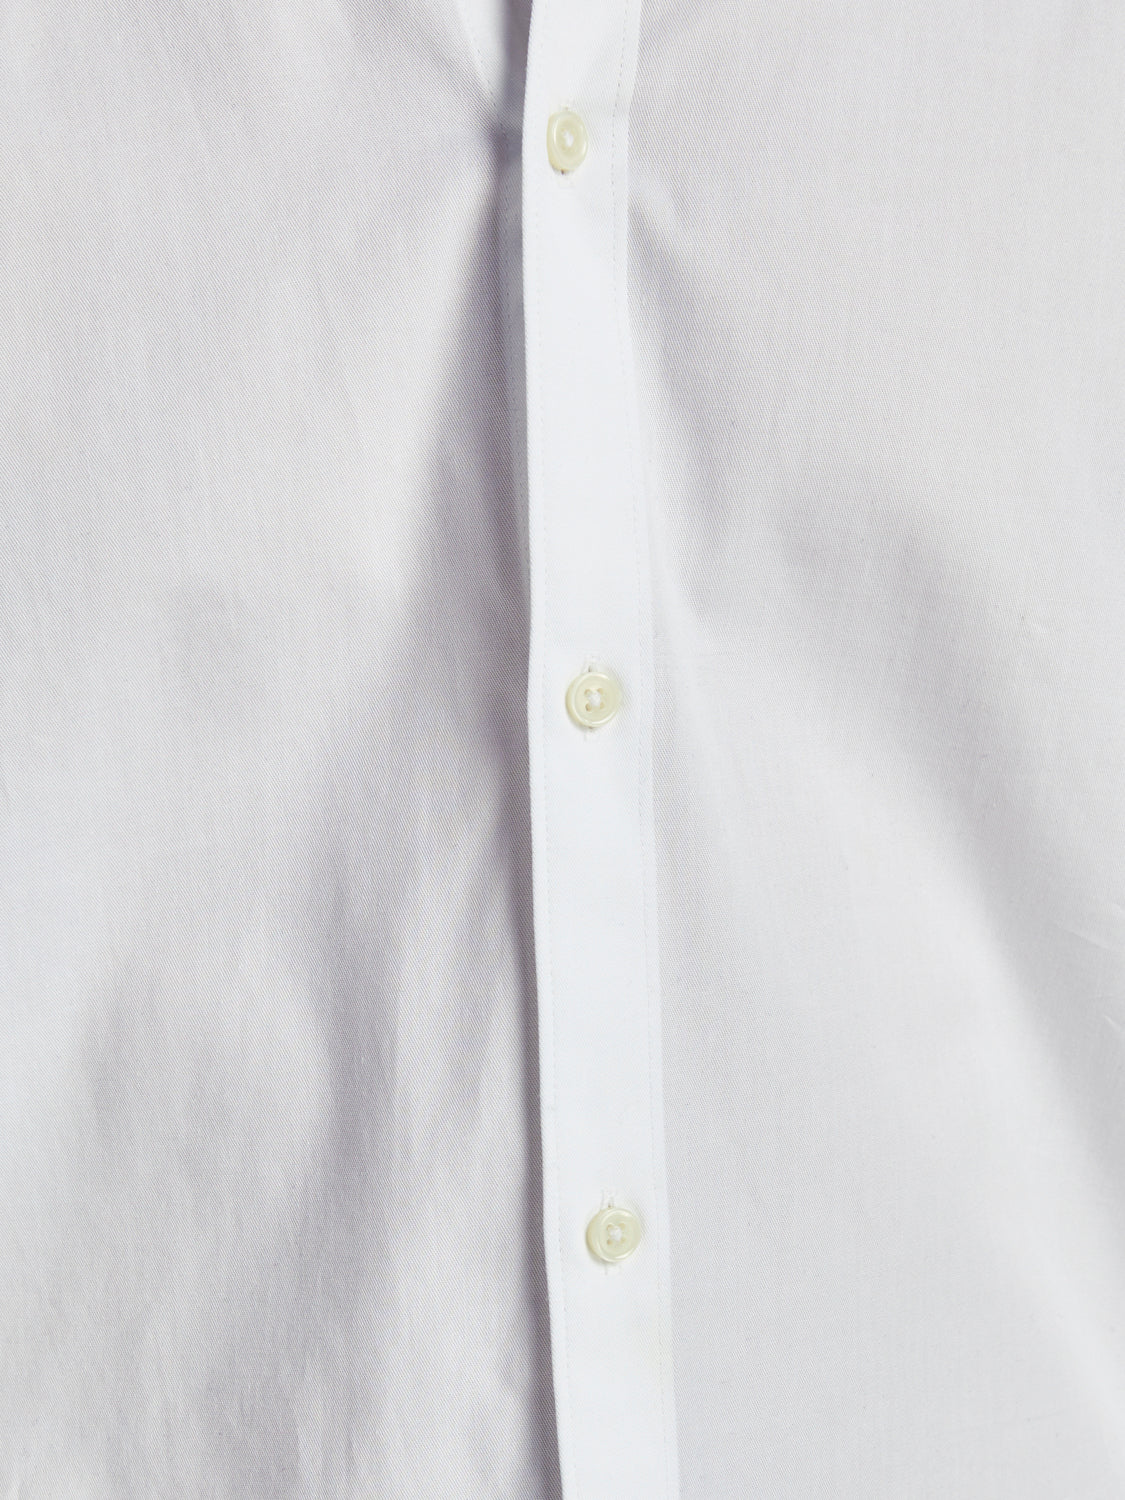 JPRBLACARDIFF Shirts - White